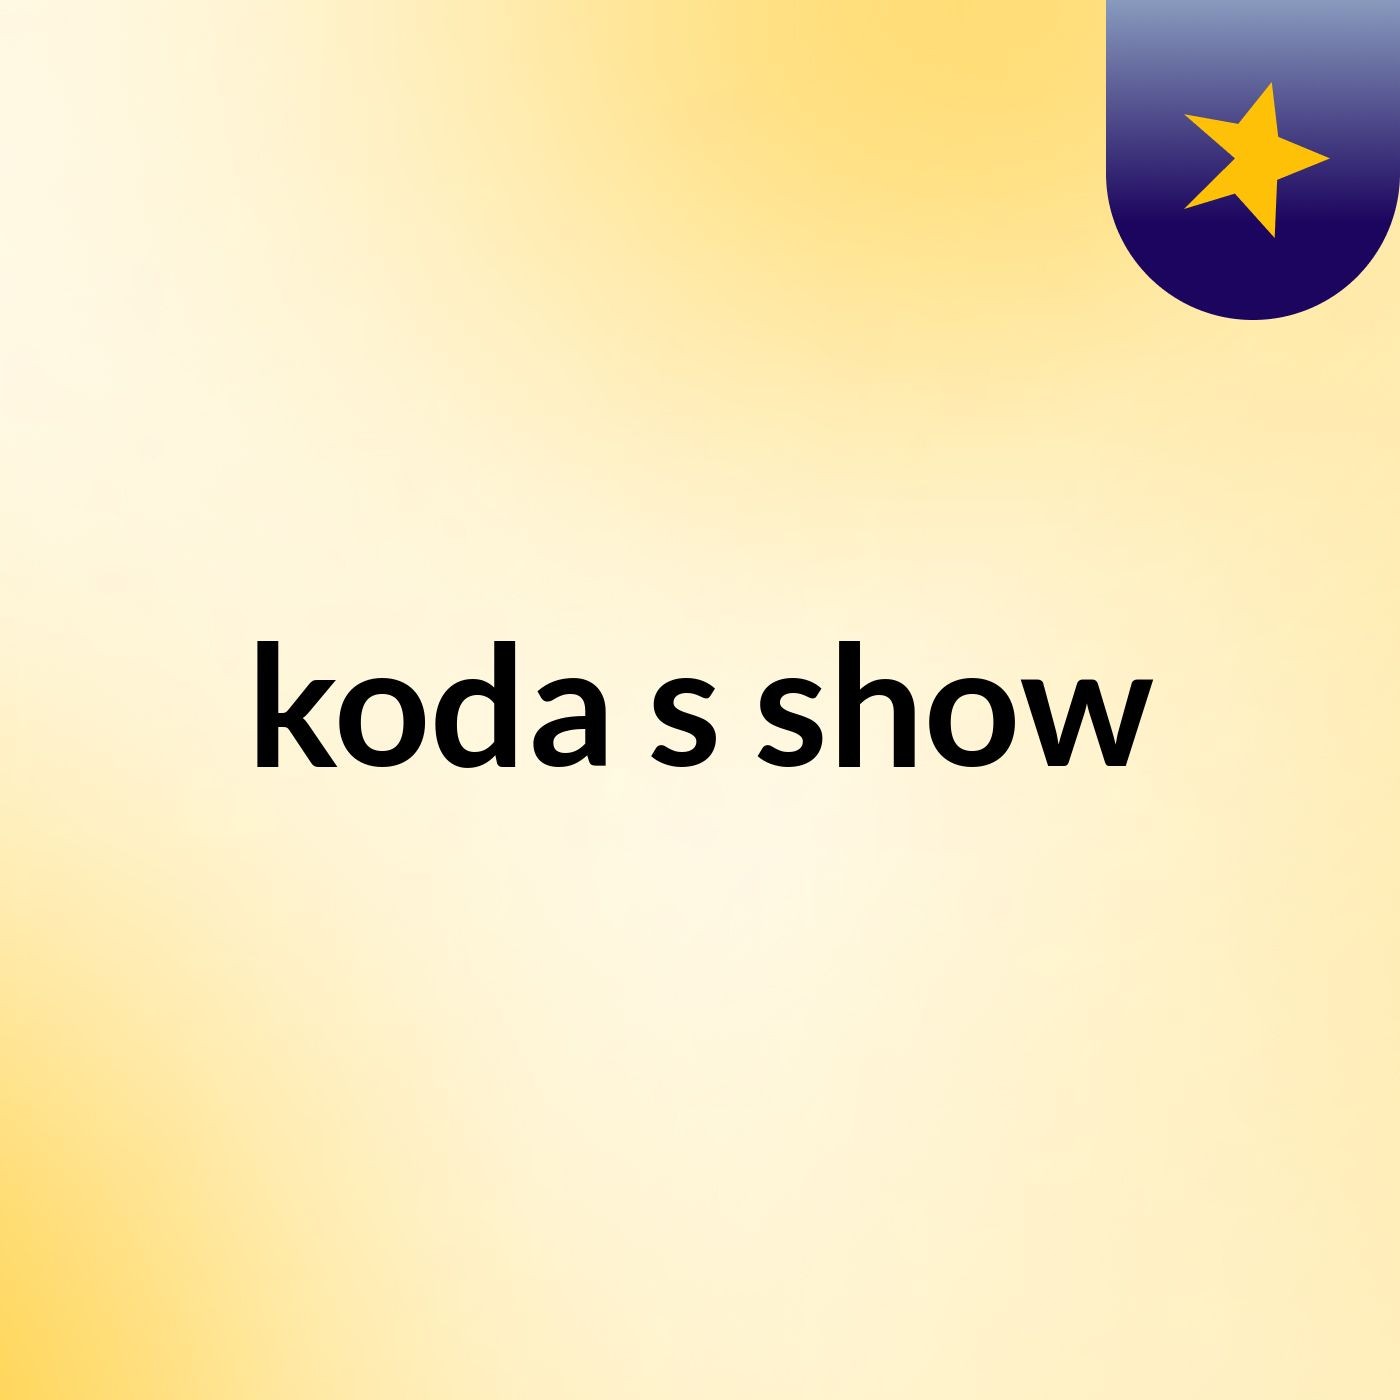 koda's show